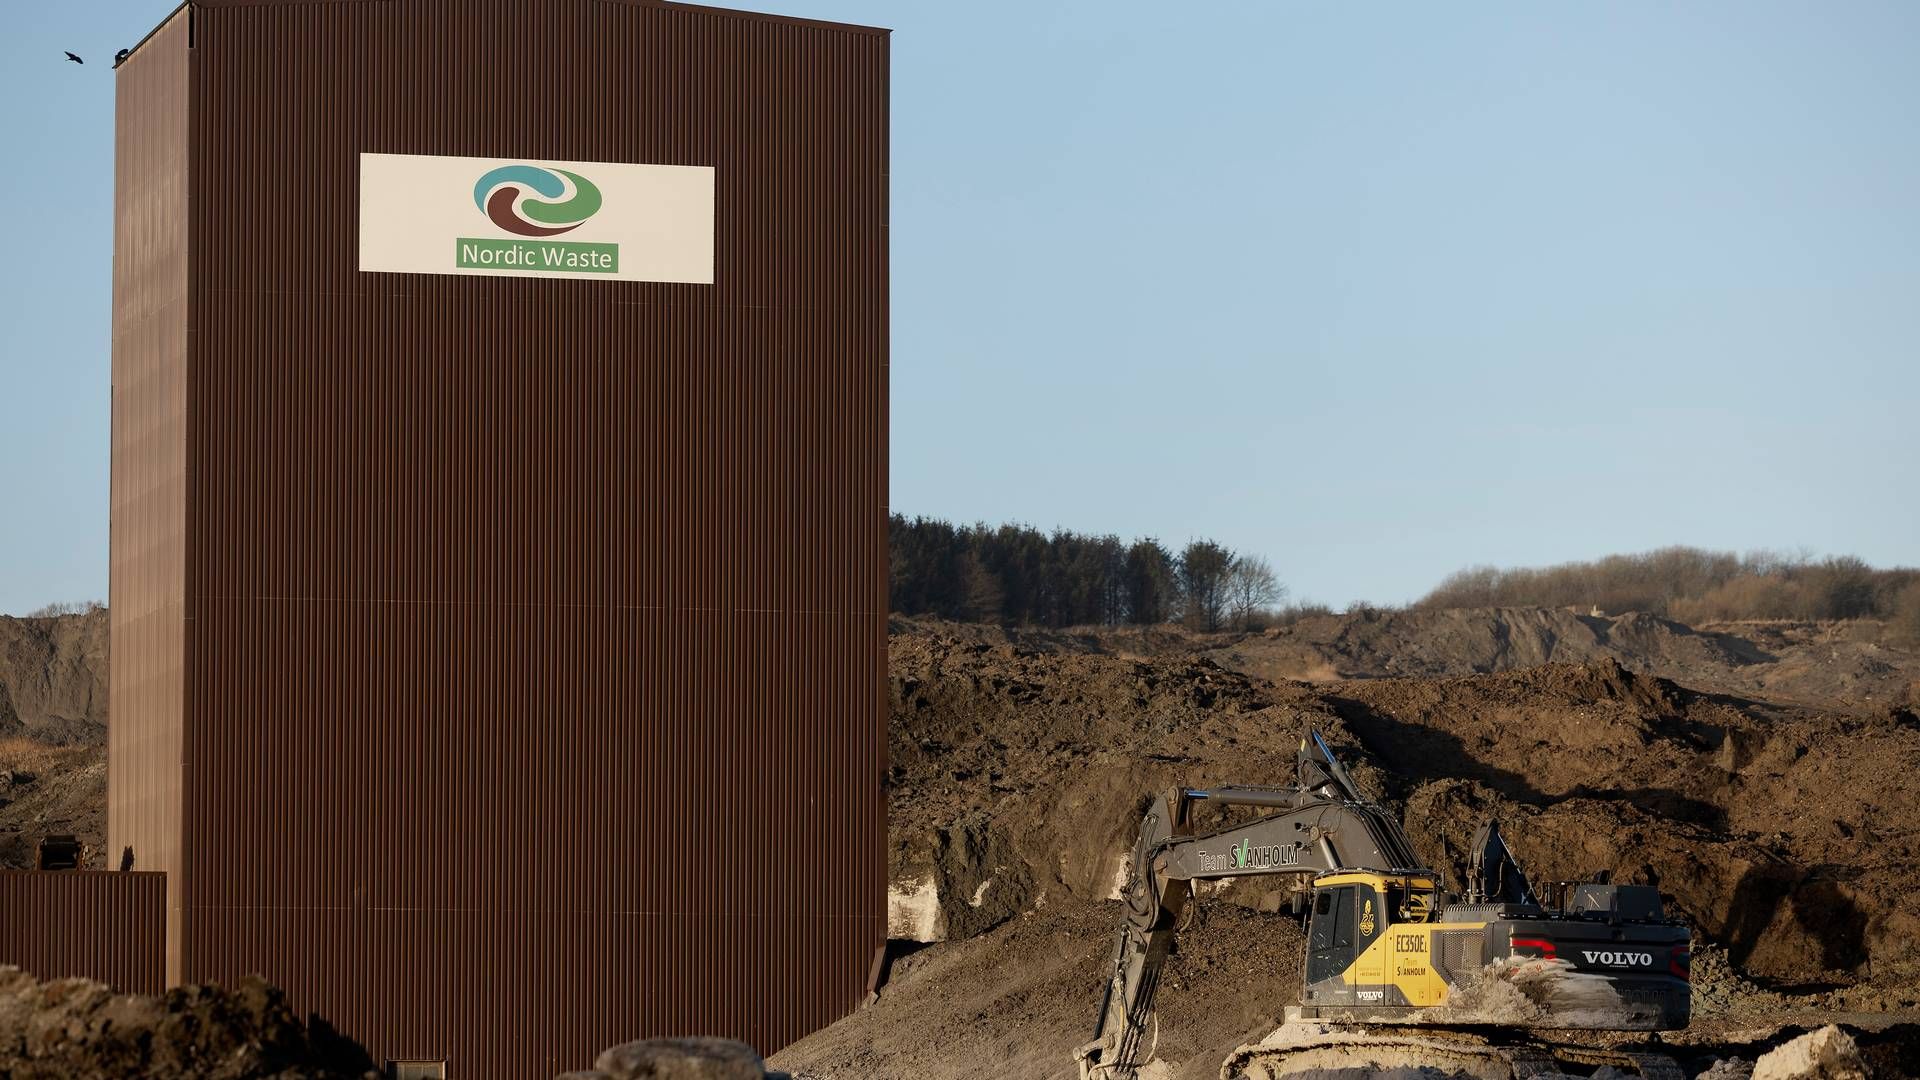 Nordic Waste forlod grunden i Ølst syd for Randers 19. december. Her opgav virksomheden selv at standse jordmasserne i bevægelse og efterlod opgaven til Randers Kommune. | Foto: Thomas Borberg